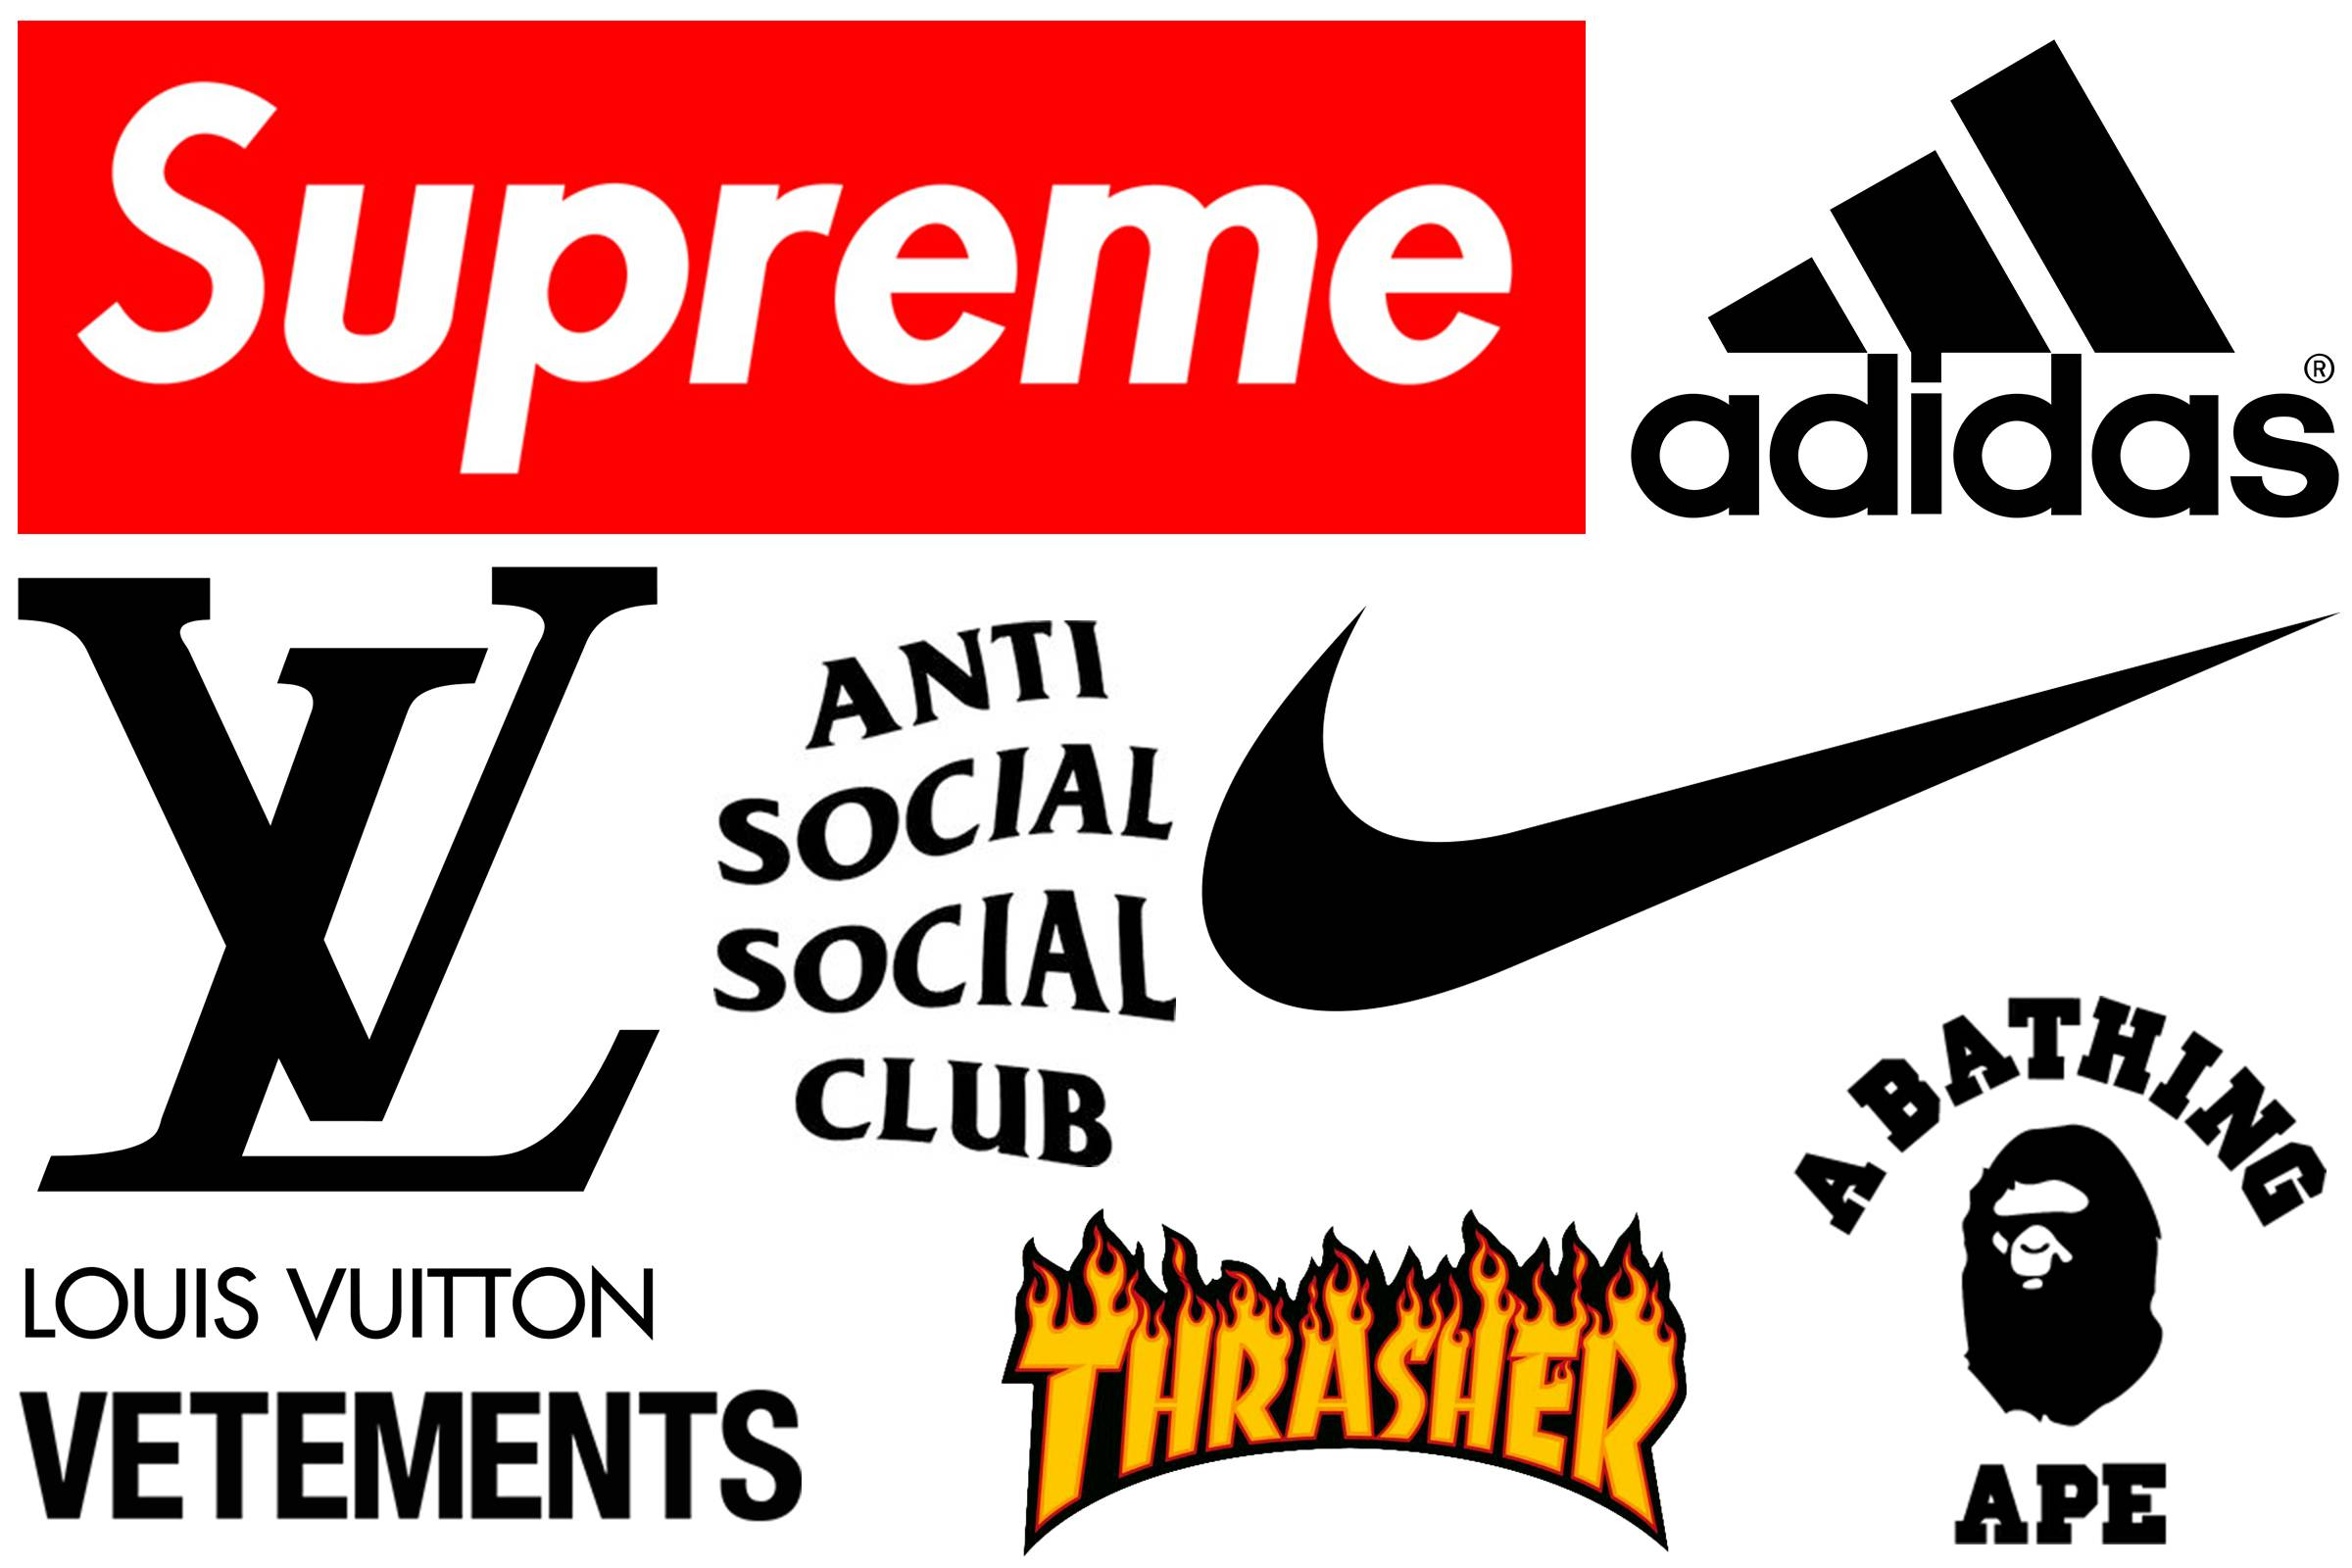 Торговые марки одежды. Логотипы известных брендов. Логотипы известных брендов одежды. Знаменитые бренды.